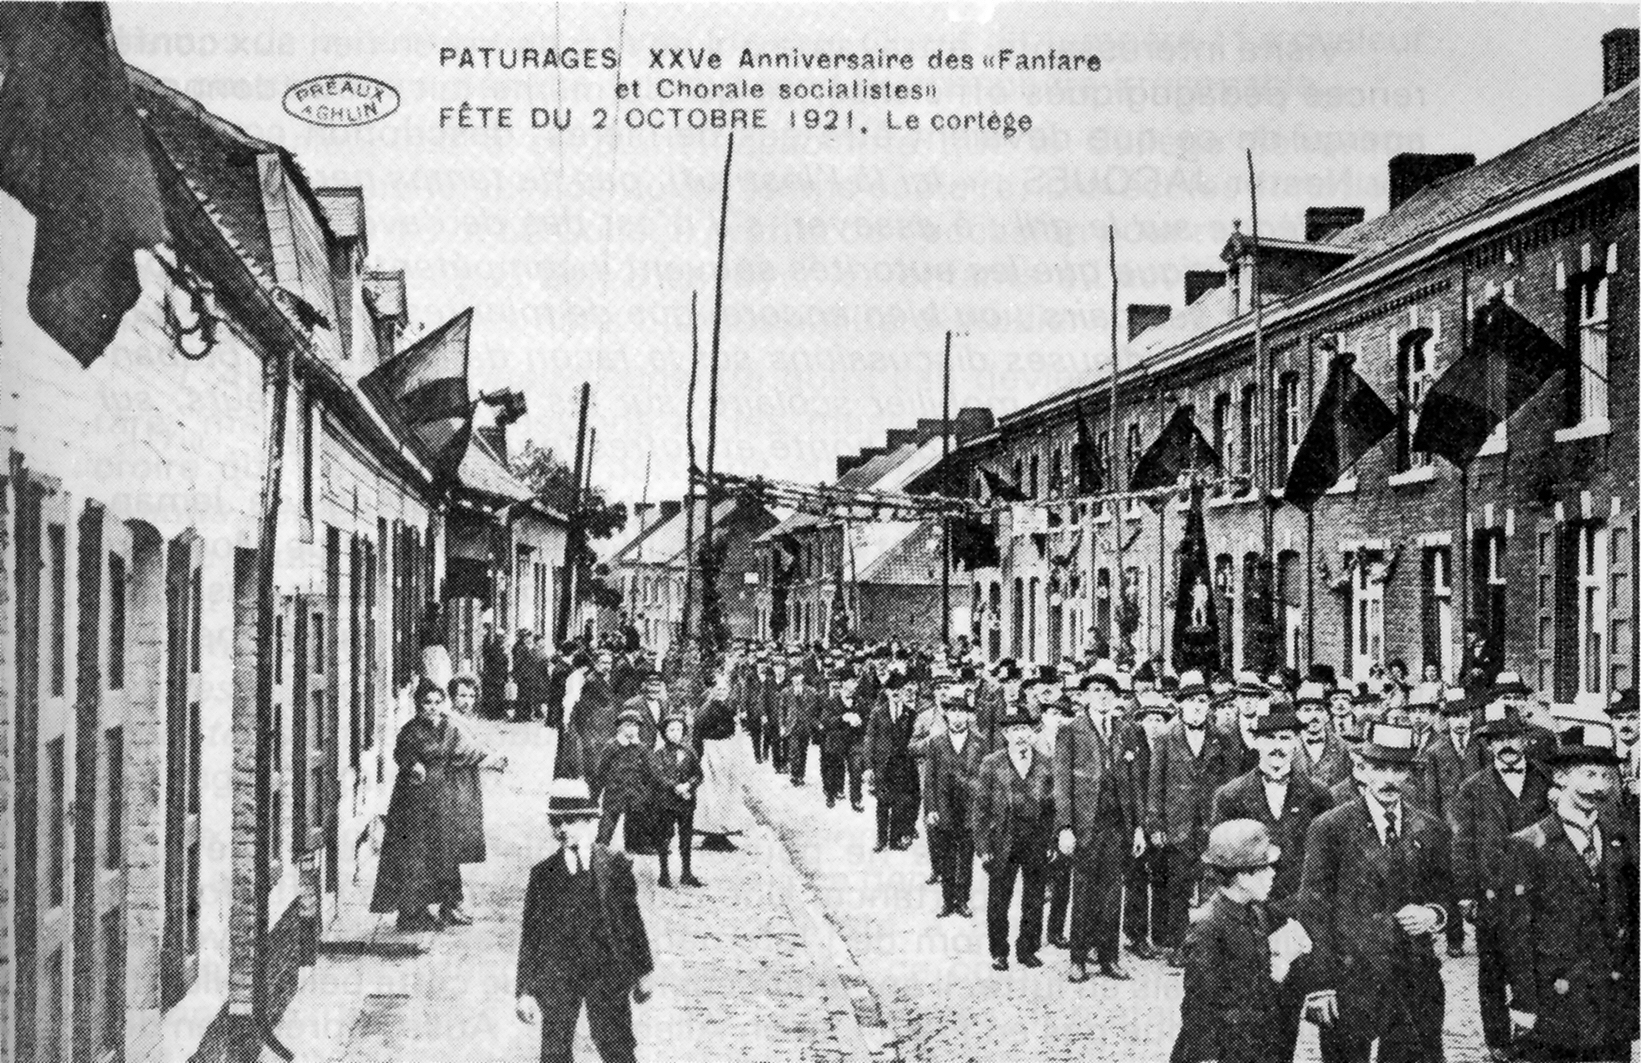 Pturages : Anniversaire des fanfare et chorale socialistes - Le cortge (2 octobre 1921).